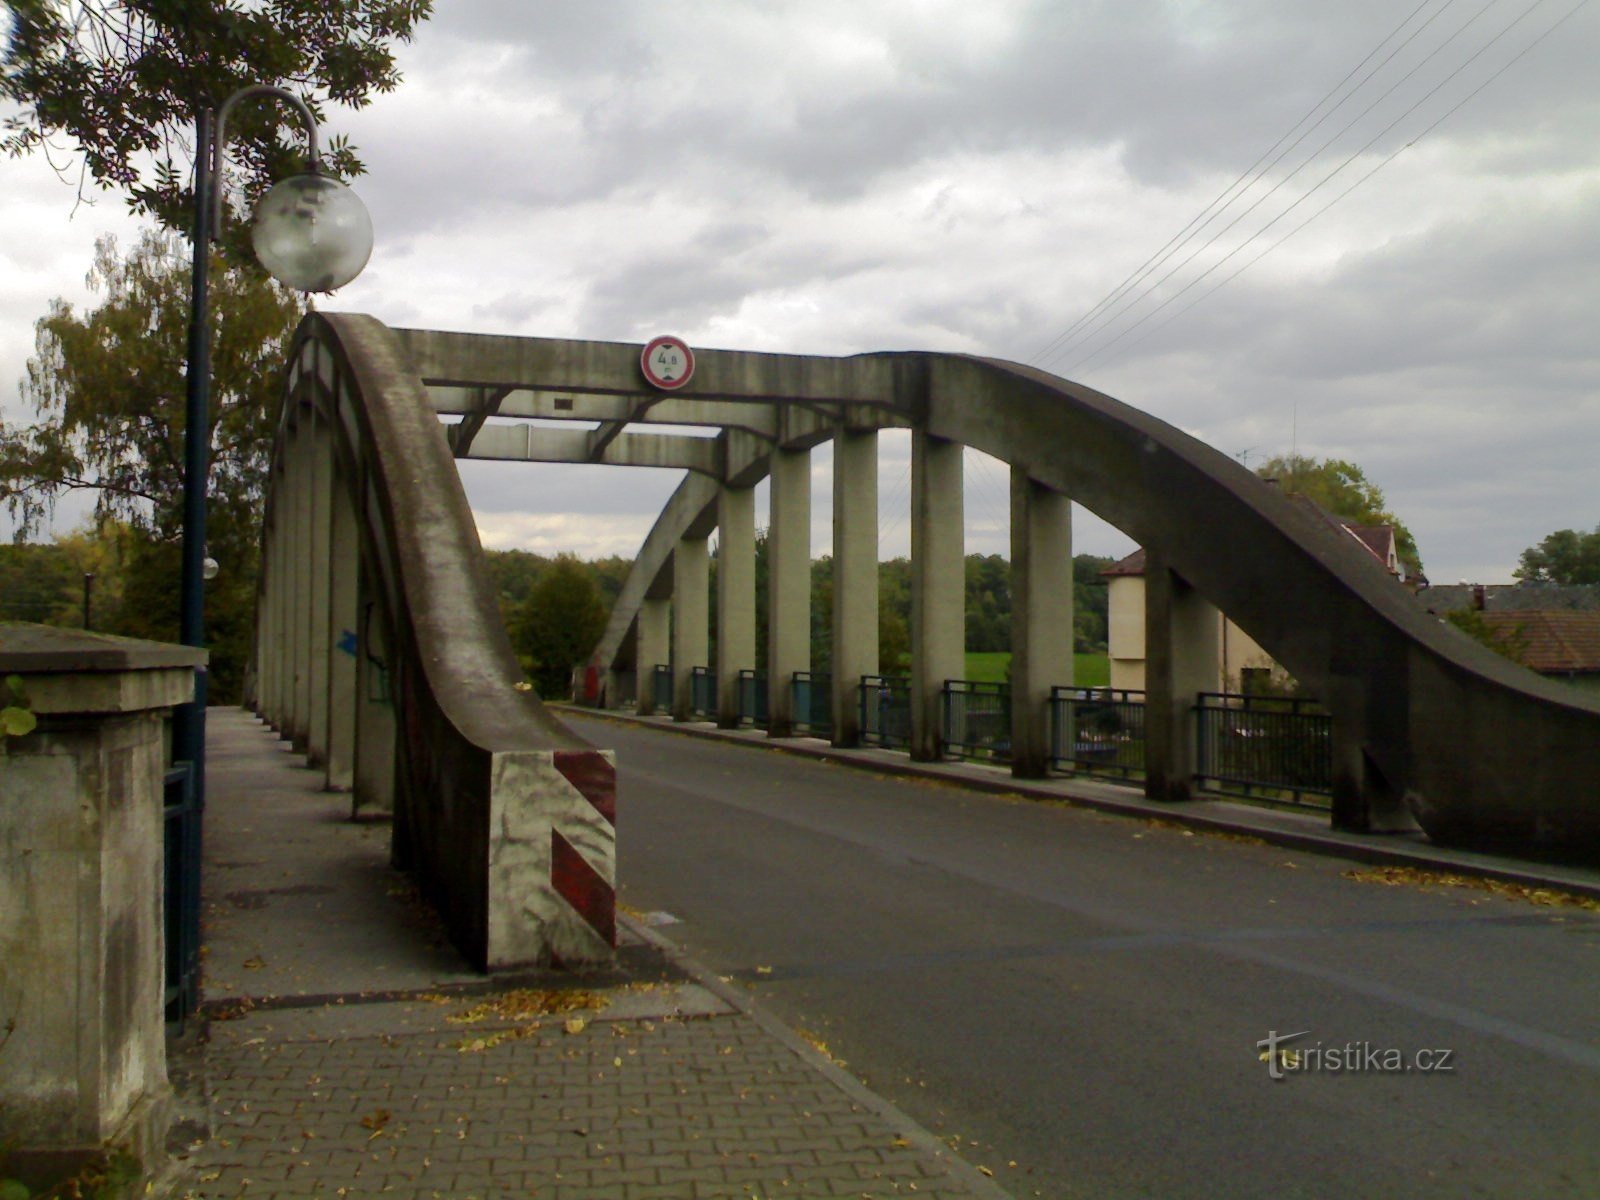 Borohrádek - most łukowy